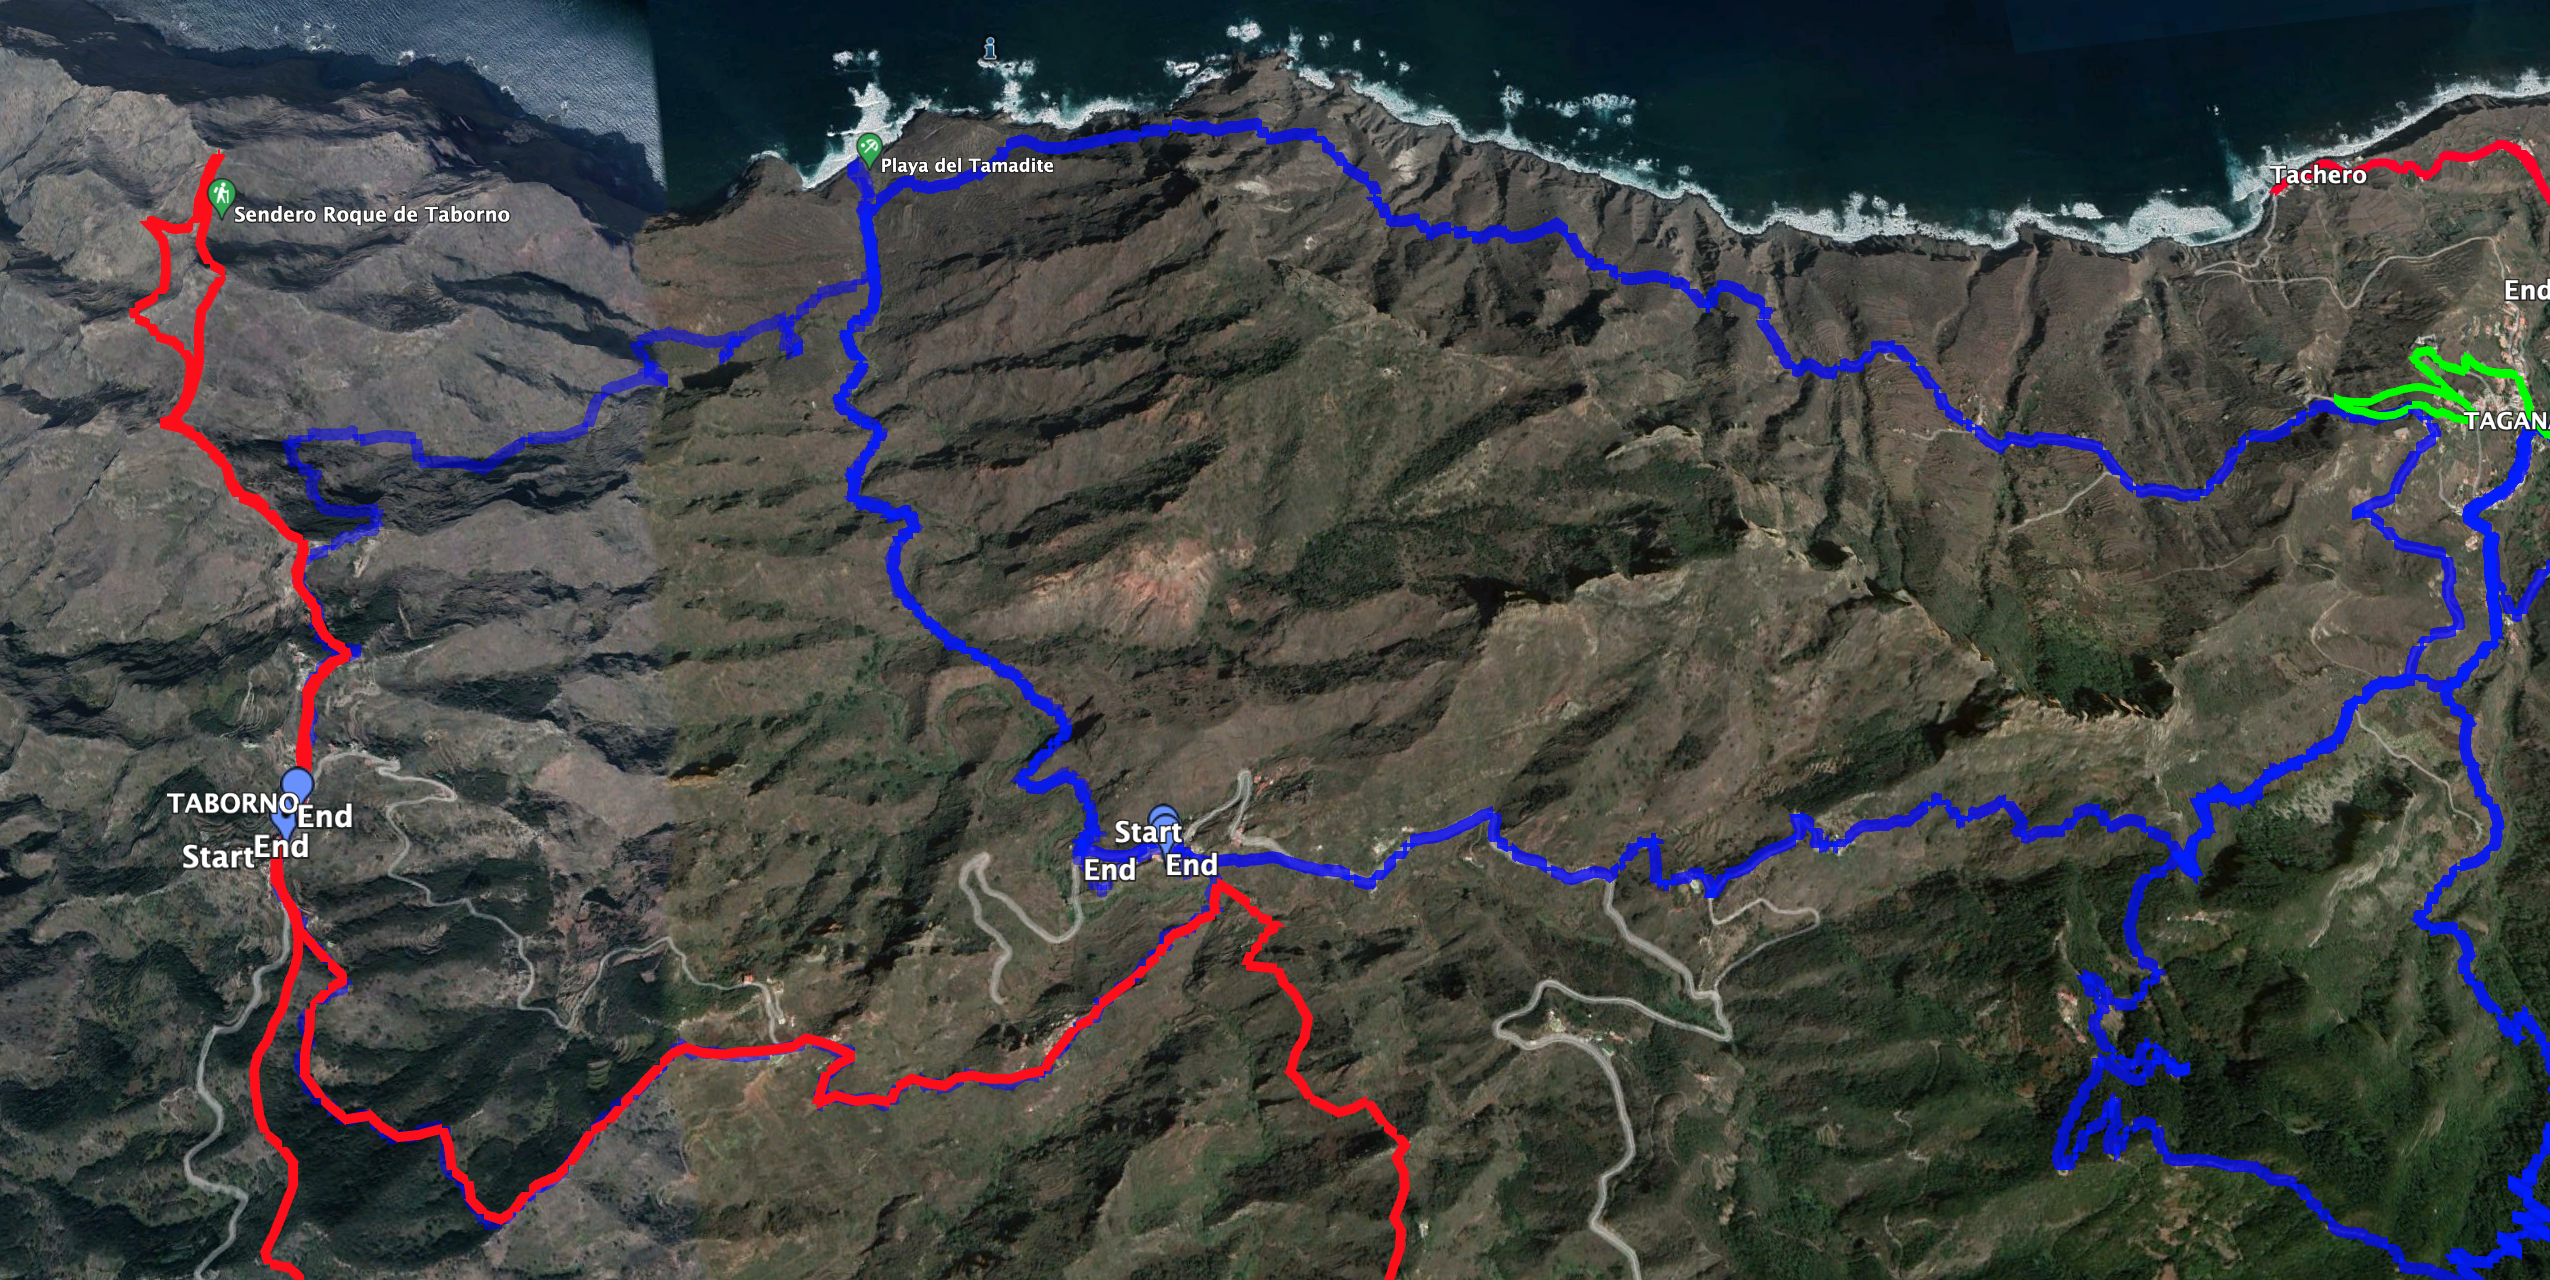 Parte de la ruta discurre paralela a la ruta Taborno - Afur - Playa Tamadite. La ida y vuelta Afur - Playa Tamadite - Taganana también bordea esta ruta (pistas azules).